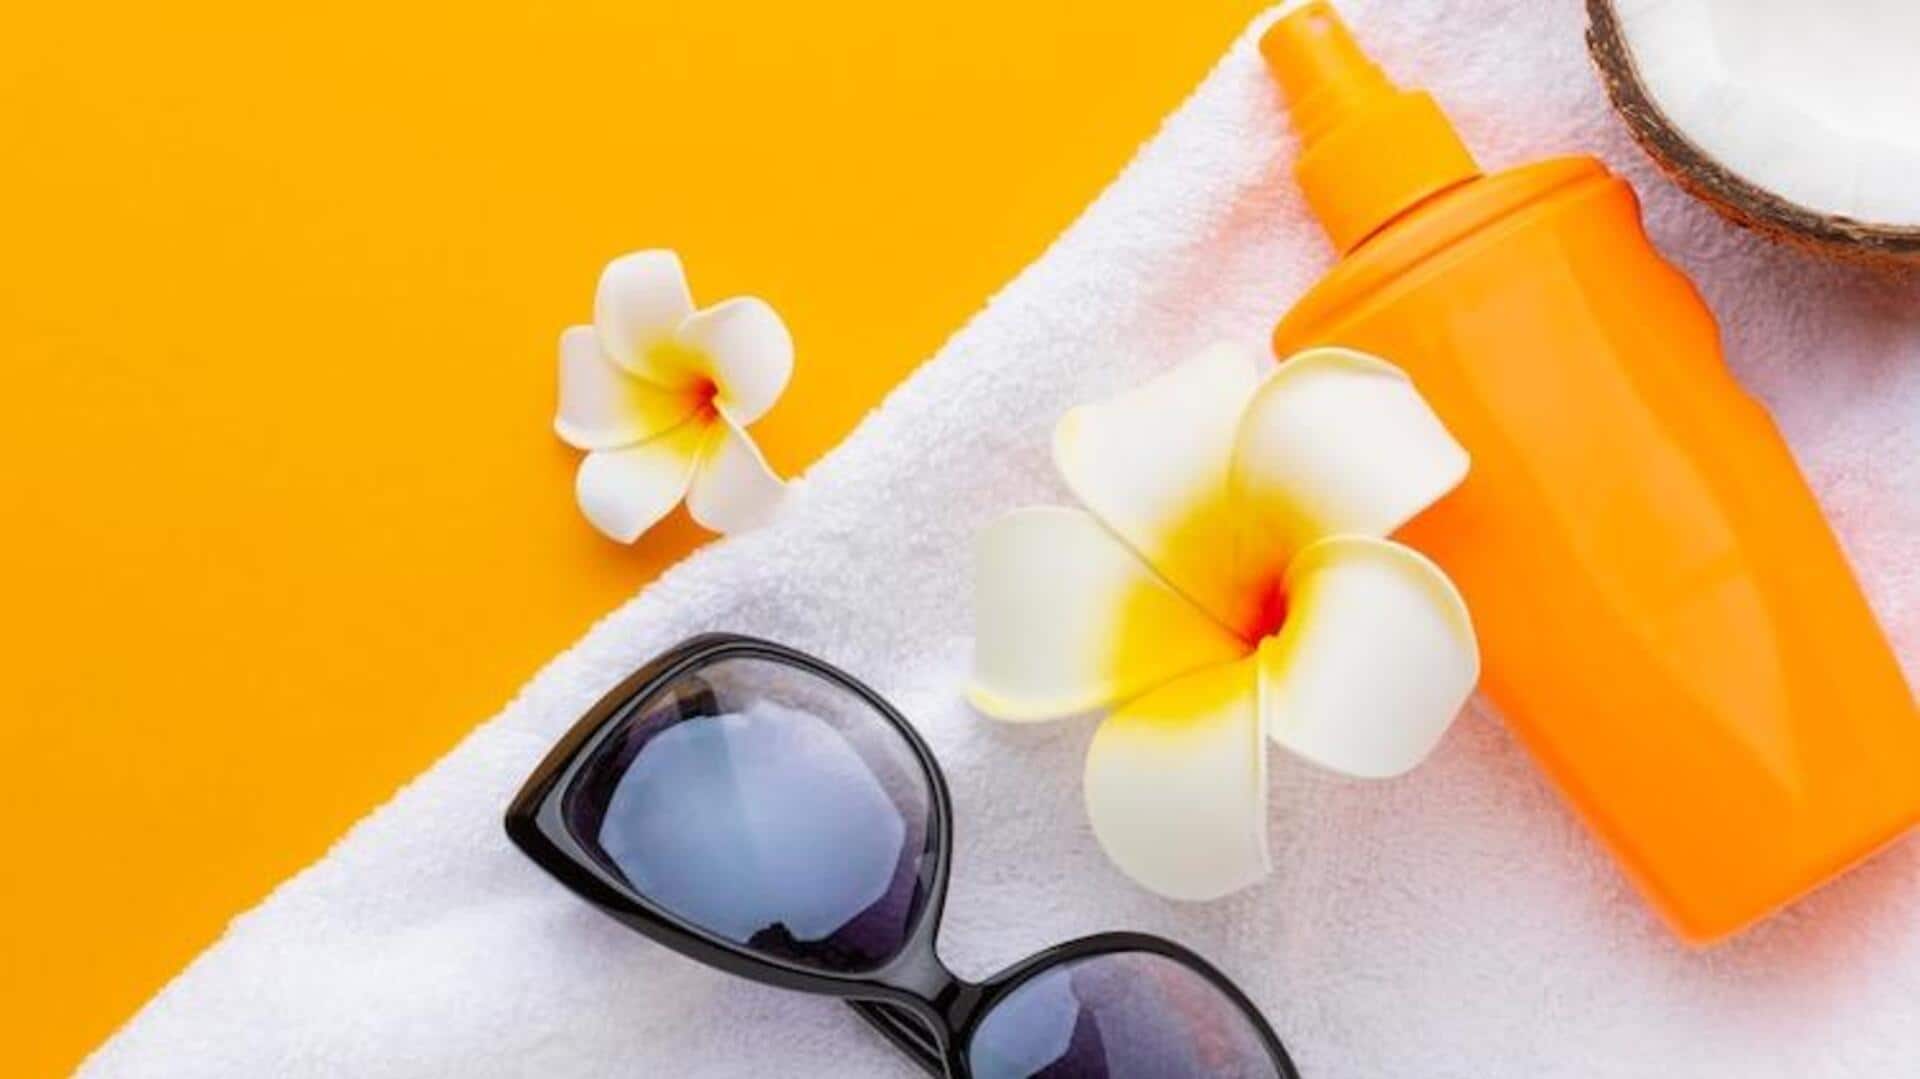 गर्मियों के दौरान घर में भी करें सनस्क्रीन का इस्तेमाल, जानिए क्या है कारण